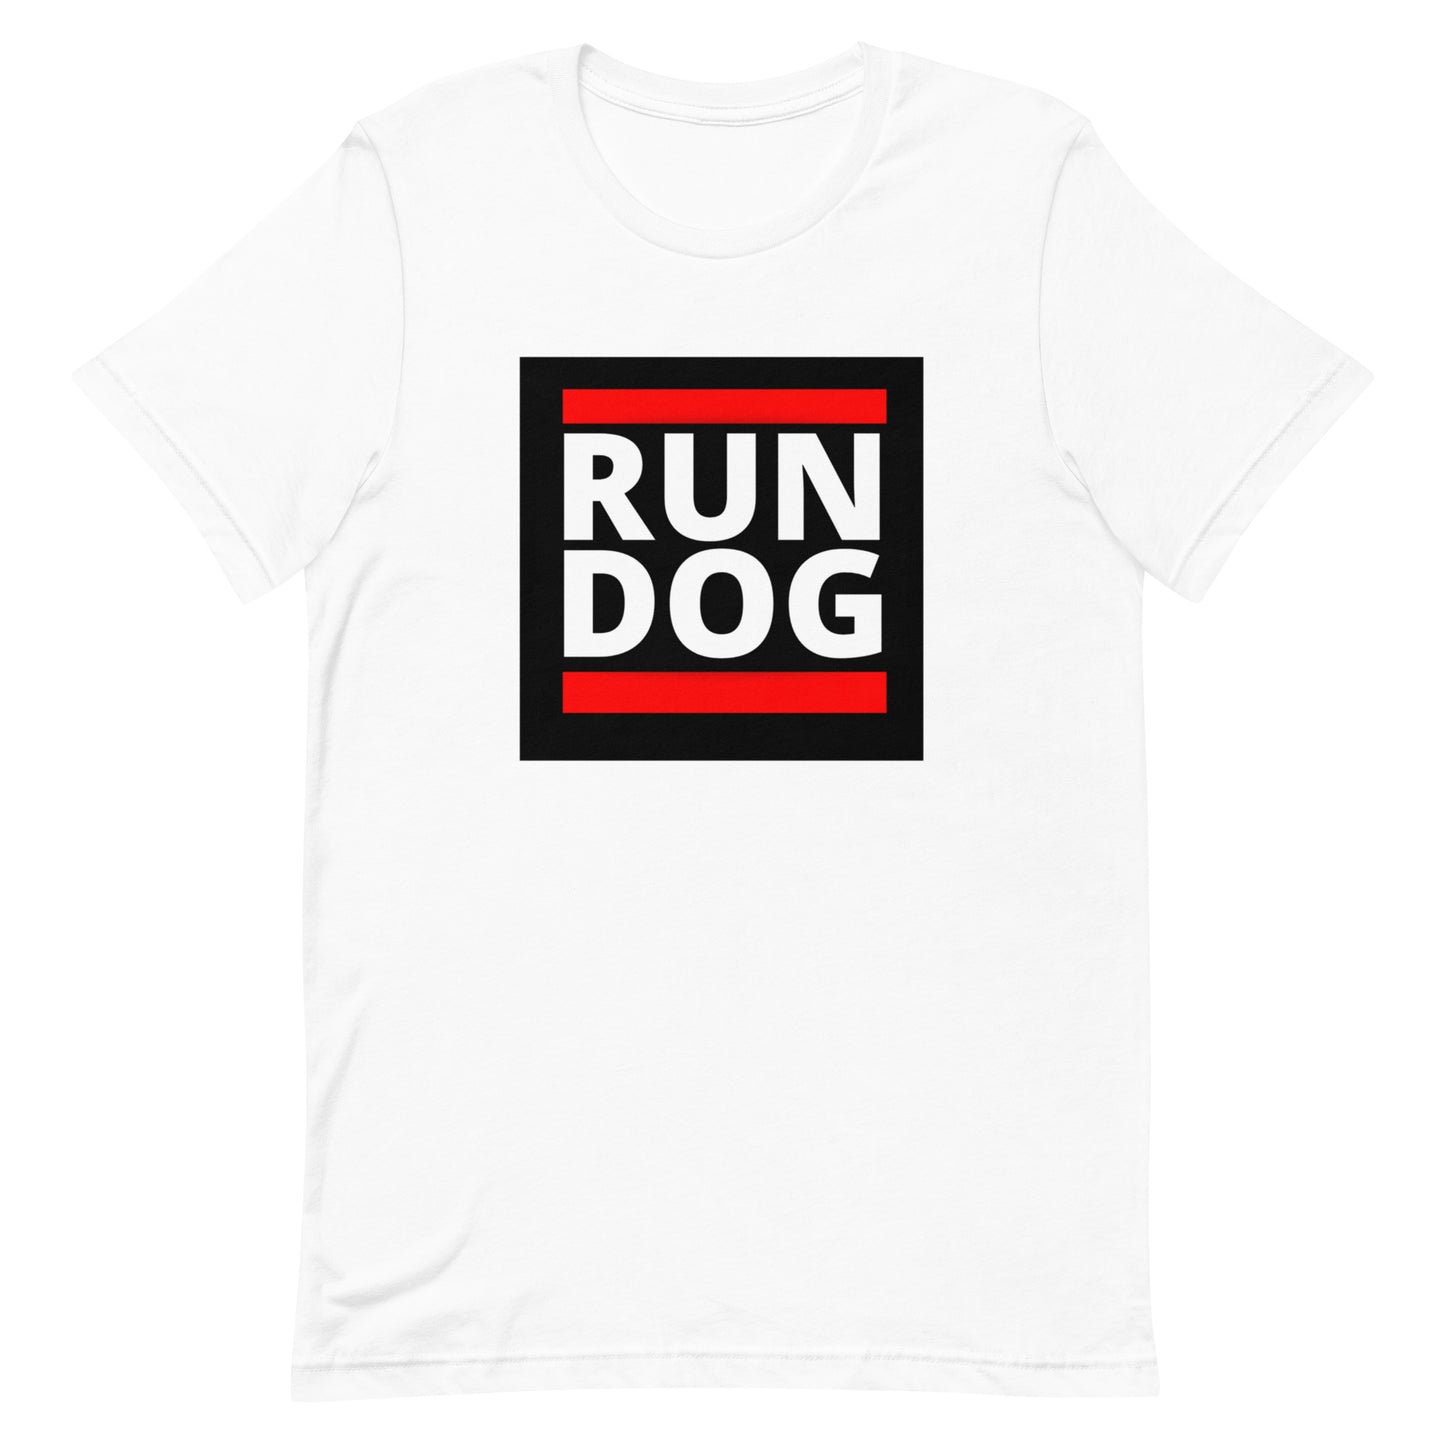 RUN DOG Unisex t-shirt